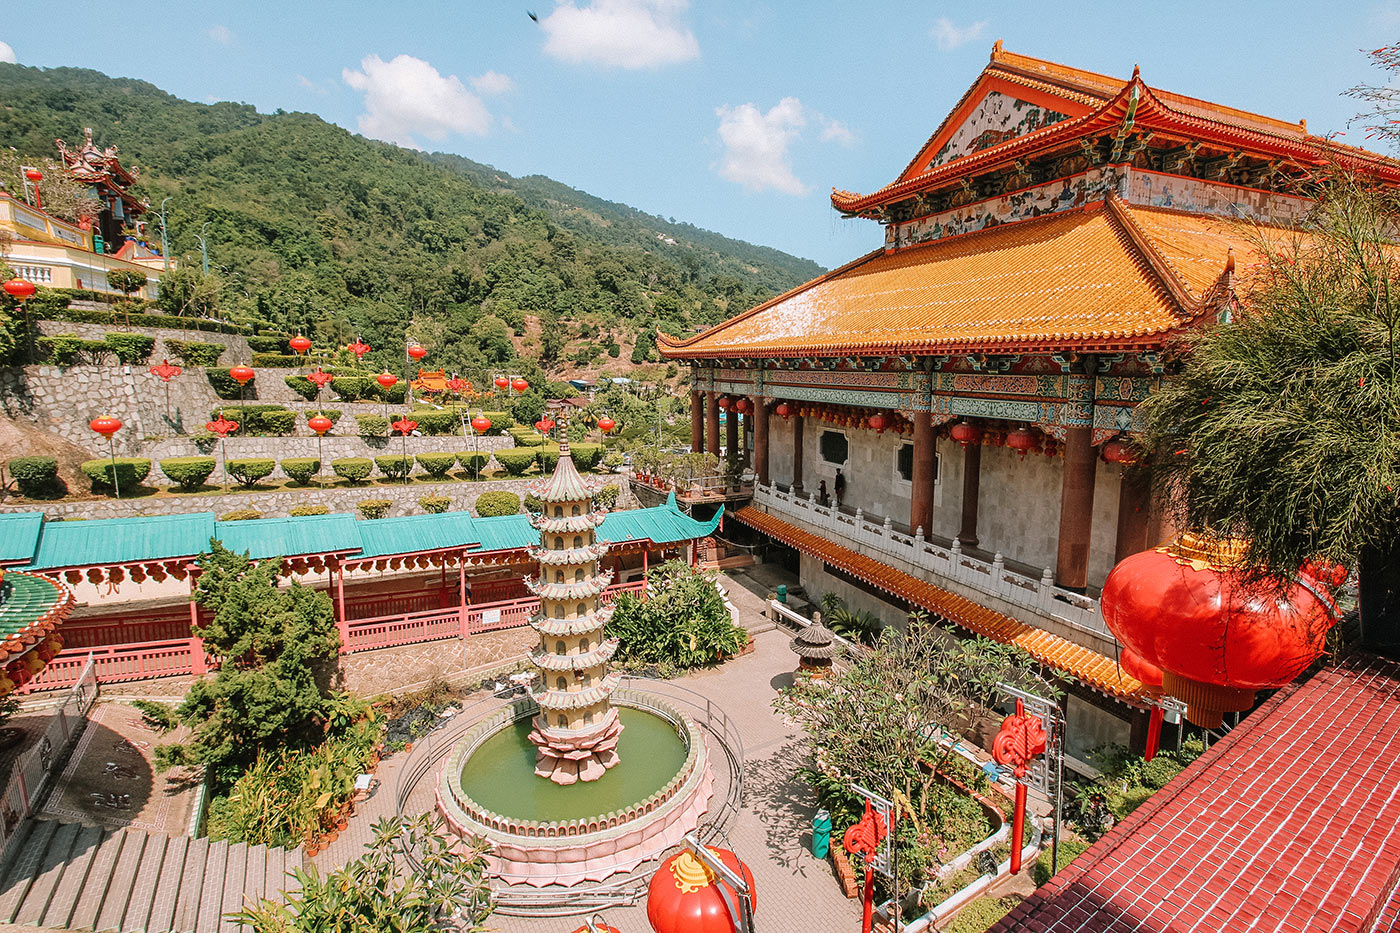 Tọa lạc tại hòn đảo Penang, được biết đến với tên gọi chùa Cực Lạc. Đây là công trỉnh Phật giáo lớn nhất ở Đông Nam Á với kiến trúc kết hợp giữa Thái Lan, Trung Quốc và Myanmar Toàn bộ ngôi chùa có một phần được khắc sâu vào sườn đồi tại Ari Itam, cách đồi Penang khoảng 3km. Khuôn viên chùa rộng 12.000 ha, có nhiều công trình thờ cúng lớn nhỏ, kéo dài từ chân đồi tới đỉnh núi. Trong đó khu điện thờ trung tâm và khu đền thờ ở trên đỉnh núi.